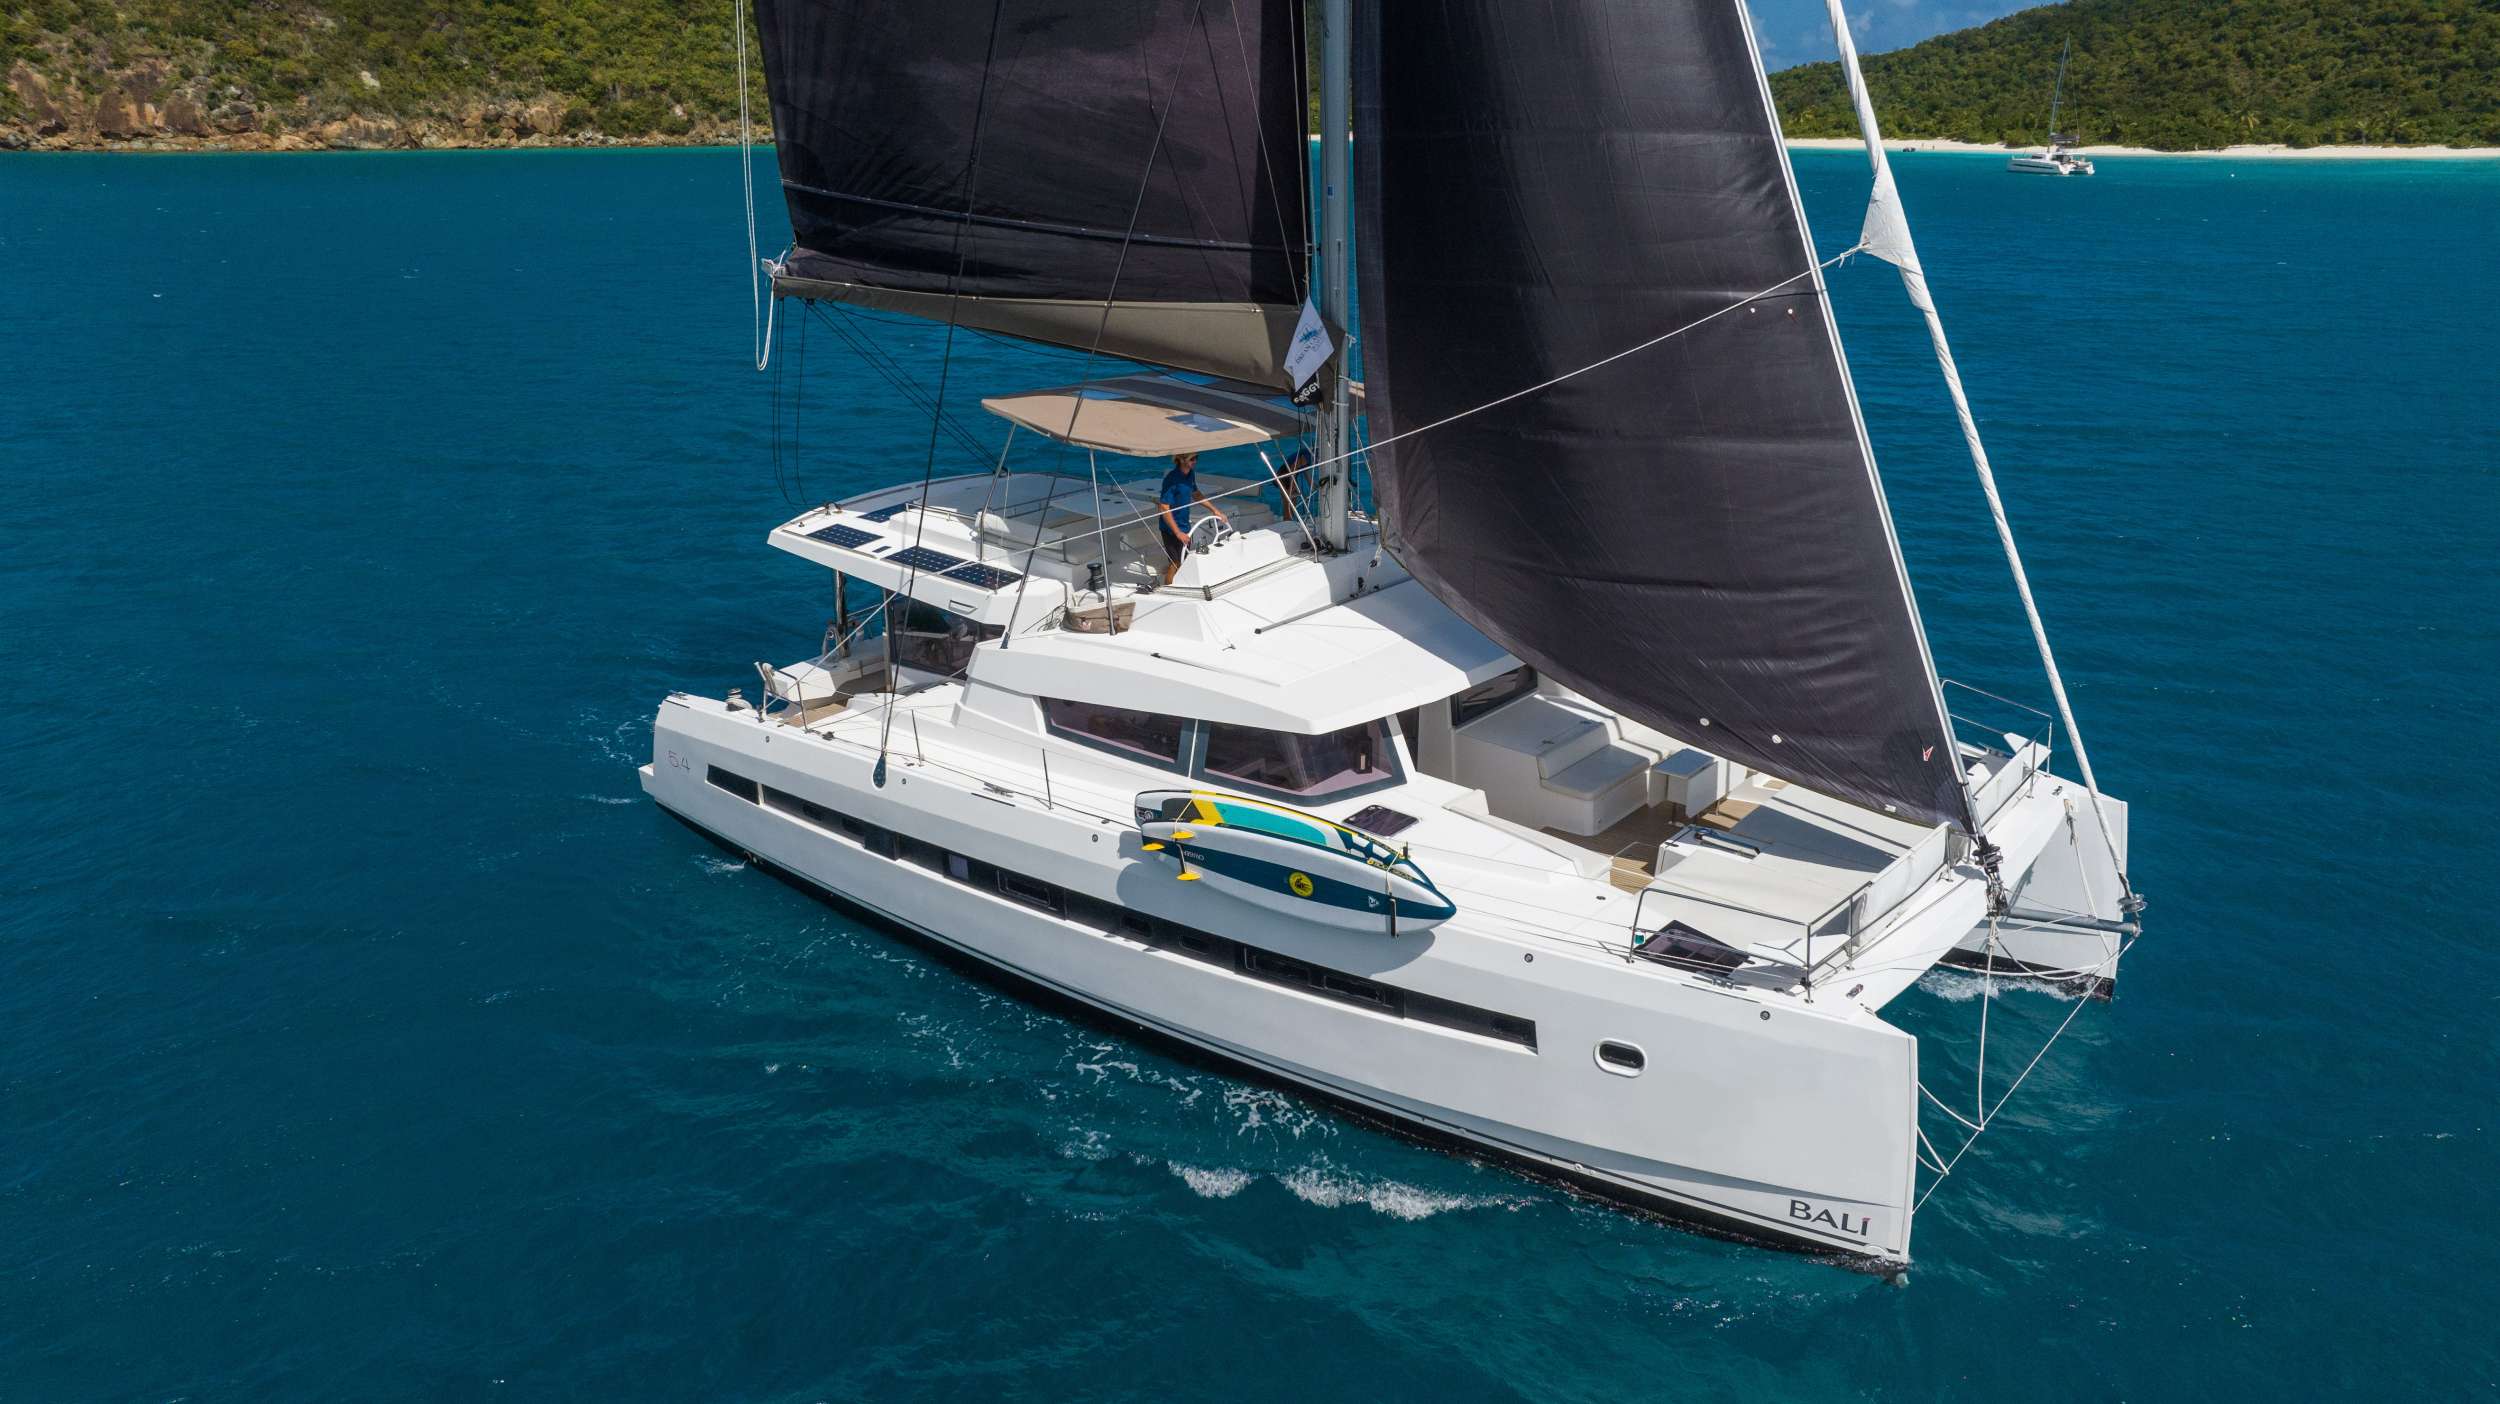 SUN DAZE 5.4 - Yacht Charter Sea Cow Bay & Boat hire in Caribbean 1